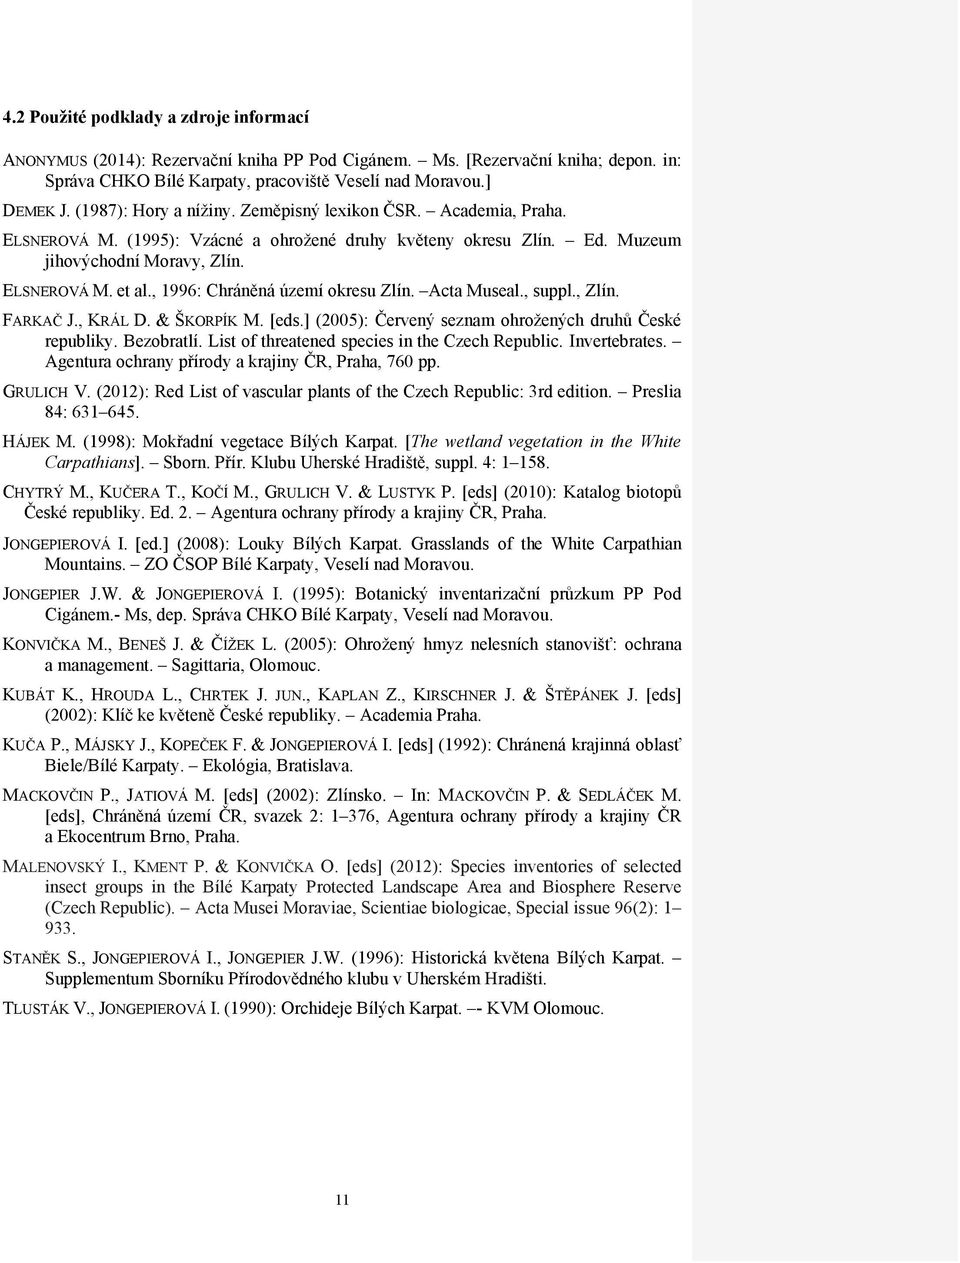 , 1996: Chráněná území okresu Zlín. Acta Museal., suppl., Zlín. FARKAČ J., KRÁL D. & ŠKORPÍK M. [eds.] (2005): Červený seznam ohrožených druhů České republiky. Bezobratlí.